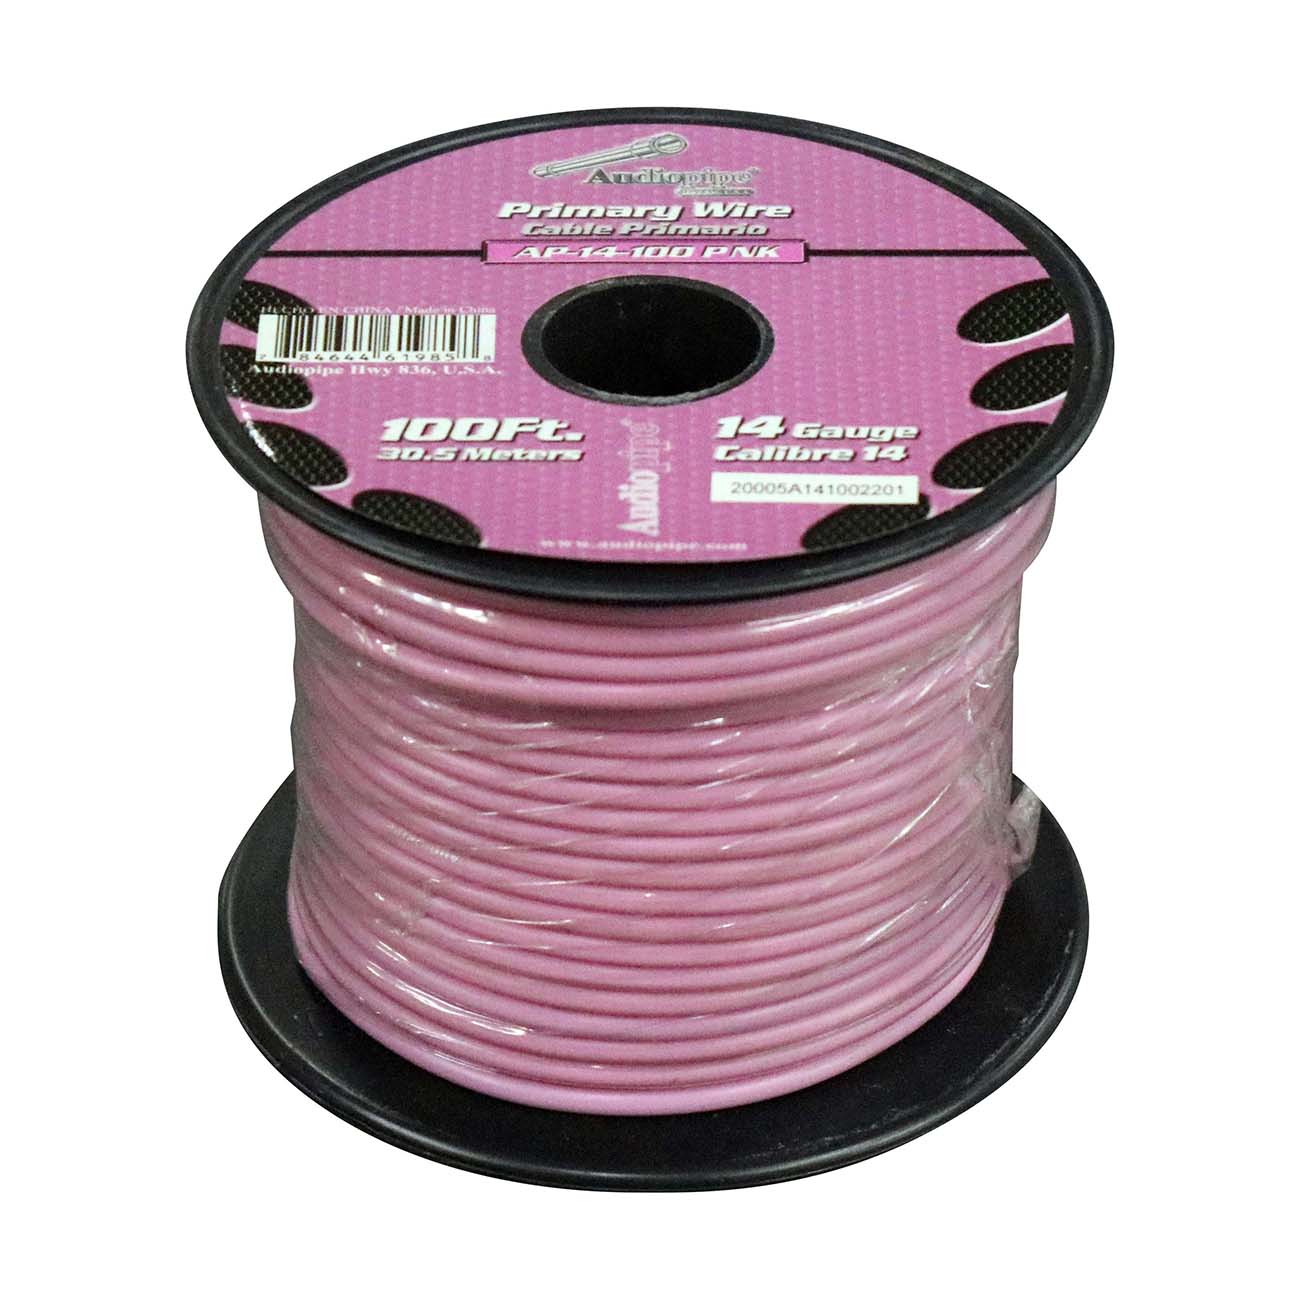 Audiopipe AP14100PK Primary Wire 14 Gauge 100 Foot – Pink